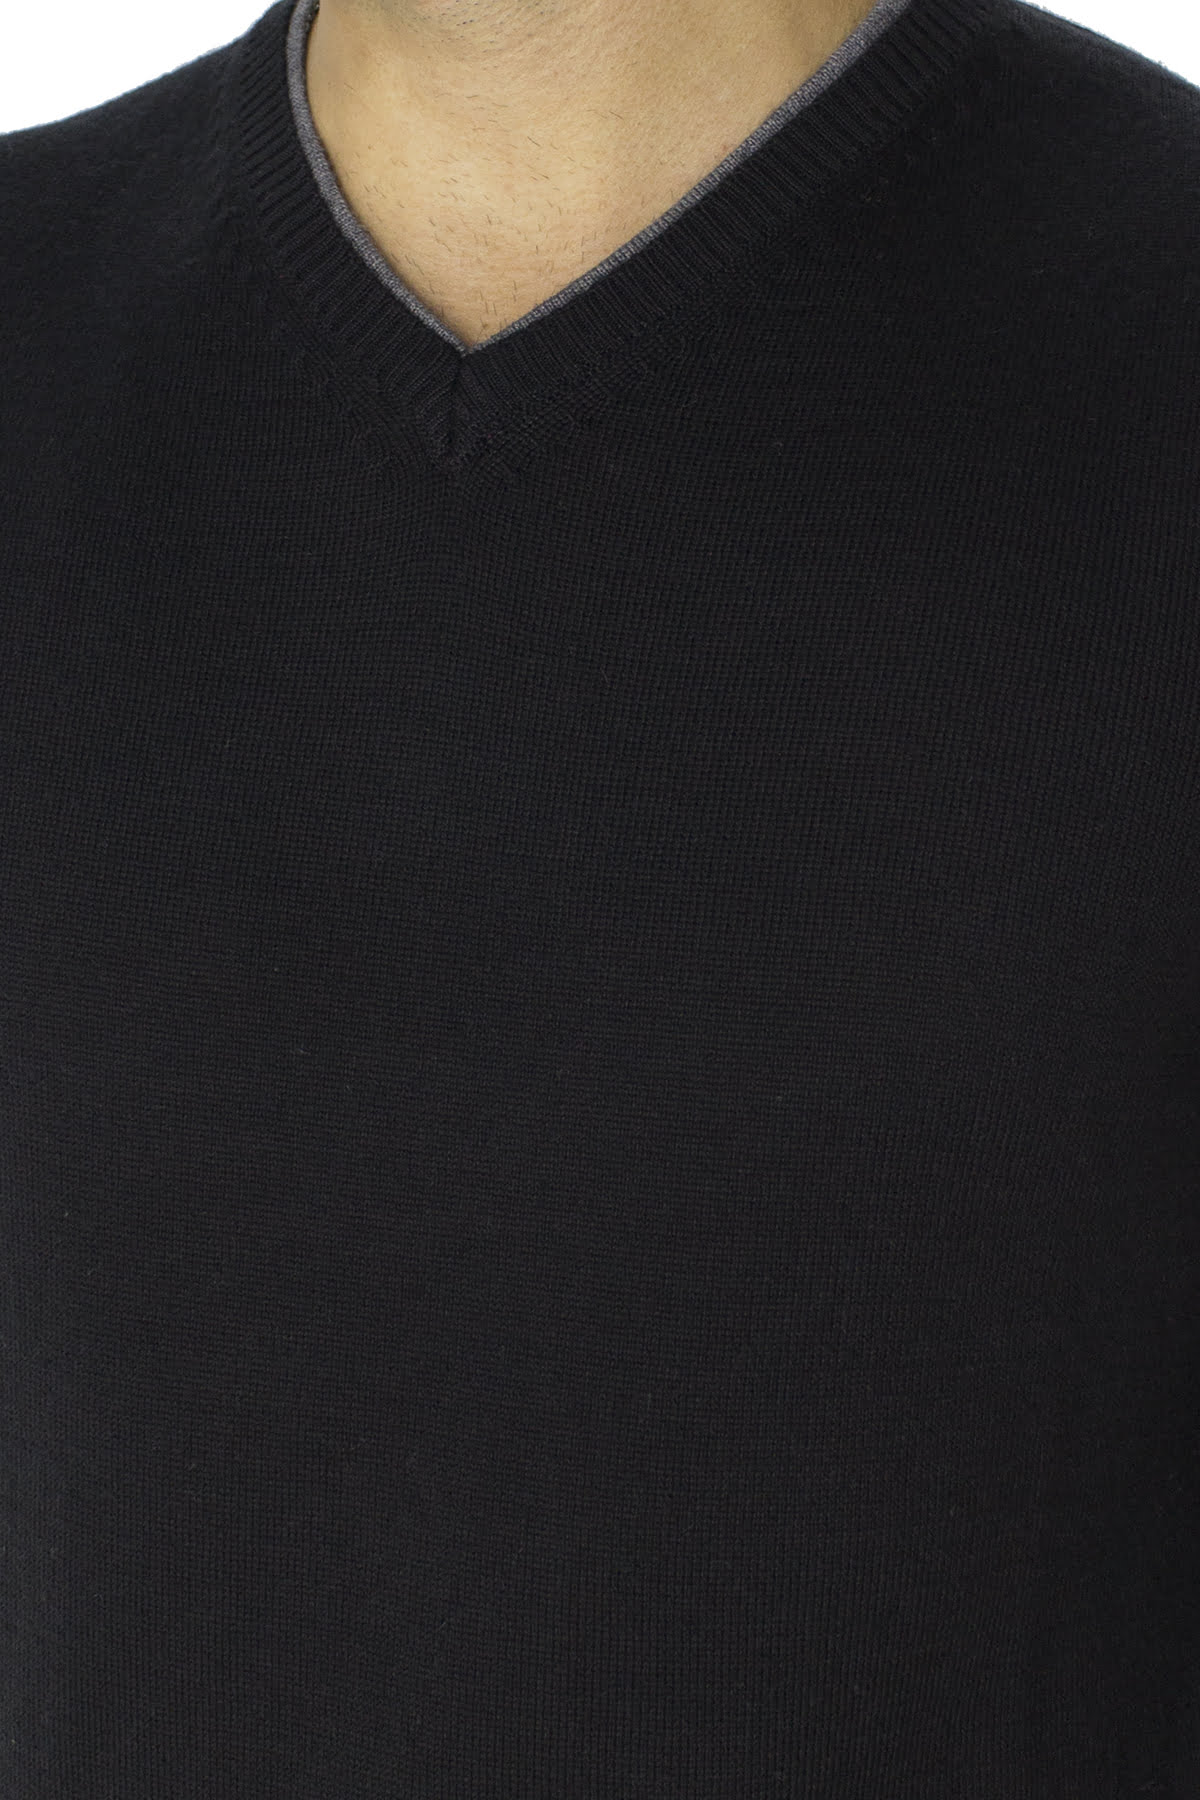 Maglione uomo scollo a v nero in lana con bordino grigio slim fit